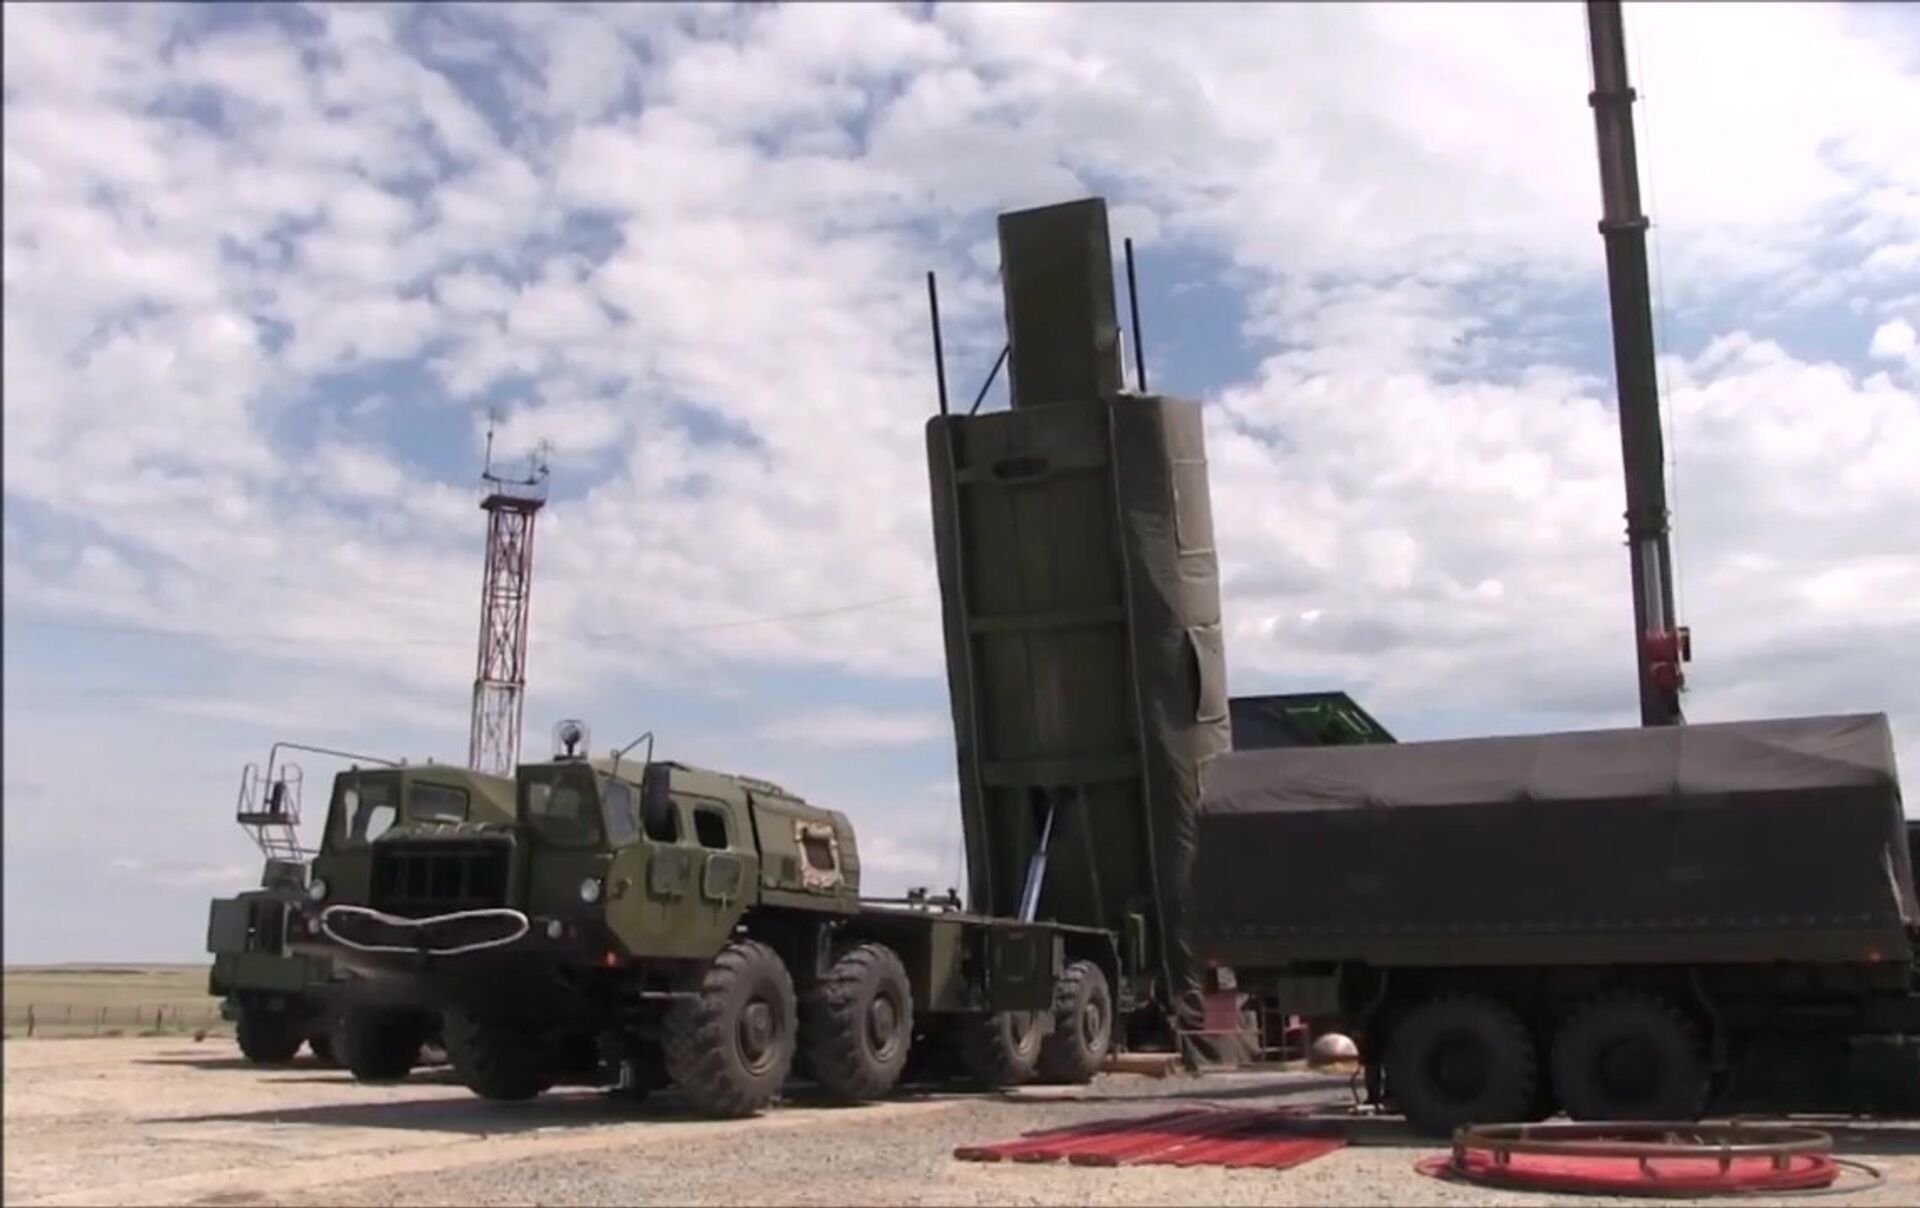 Ռուսաստանը միջուկային զորավարժություններ է սկսել «Յարս» համալիրներով. ՌԴ ՊՆ